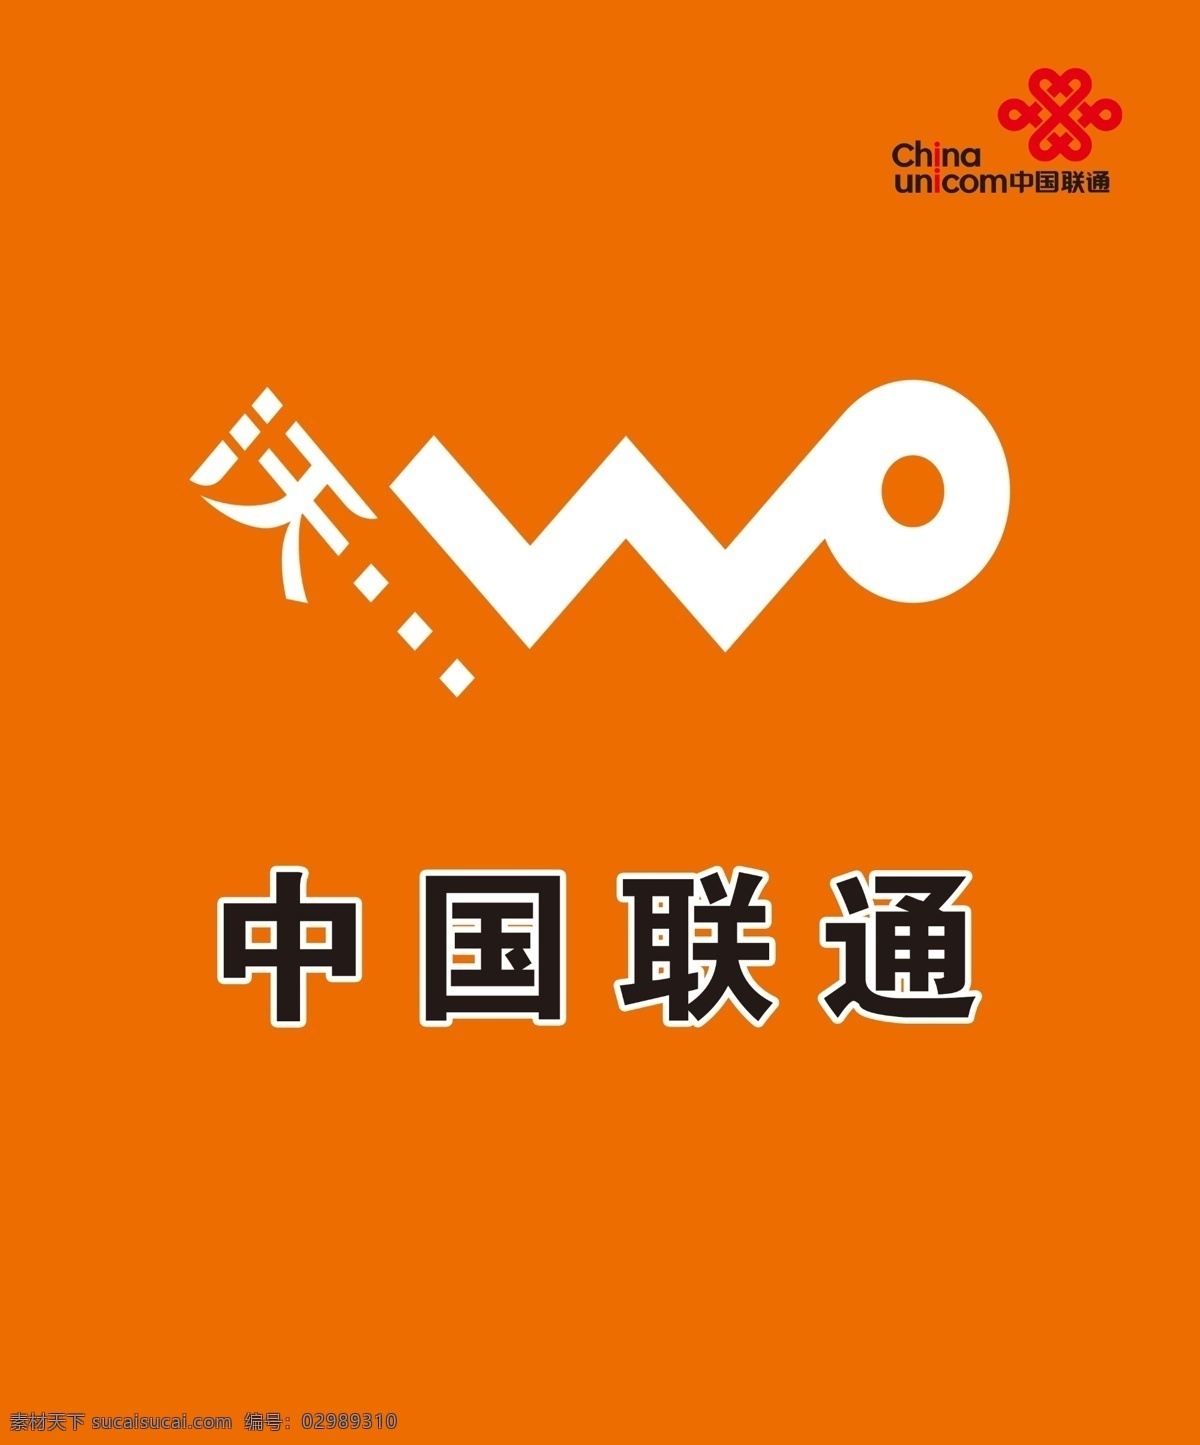 中国联通 背景墙 标志海报 背景 底纹边框 其他素材 门头店招 橘色 沃标 联通logo 广告门头设计